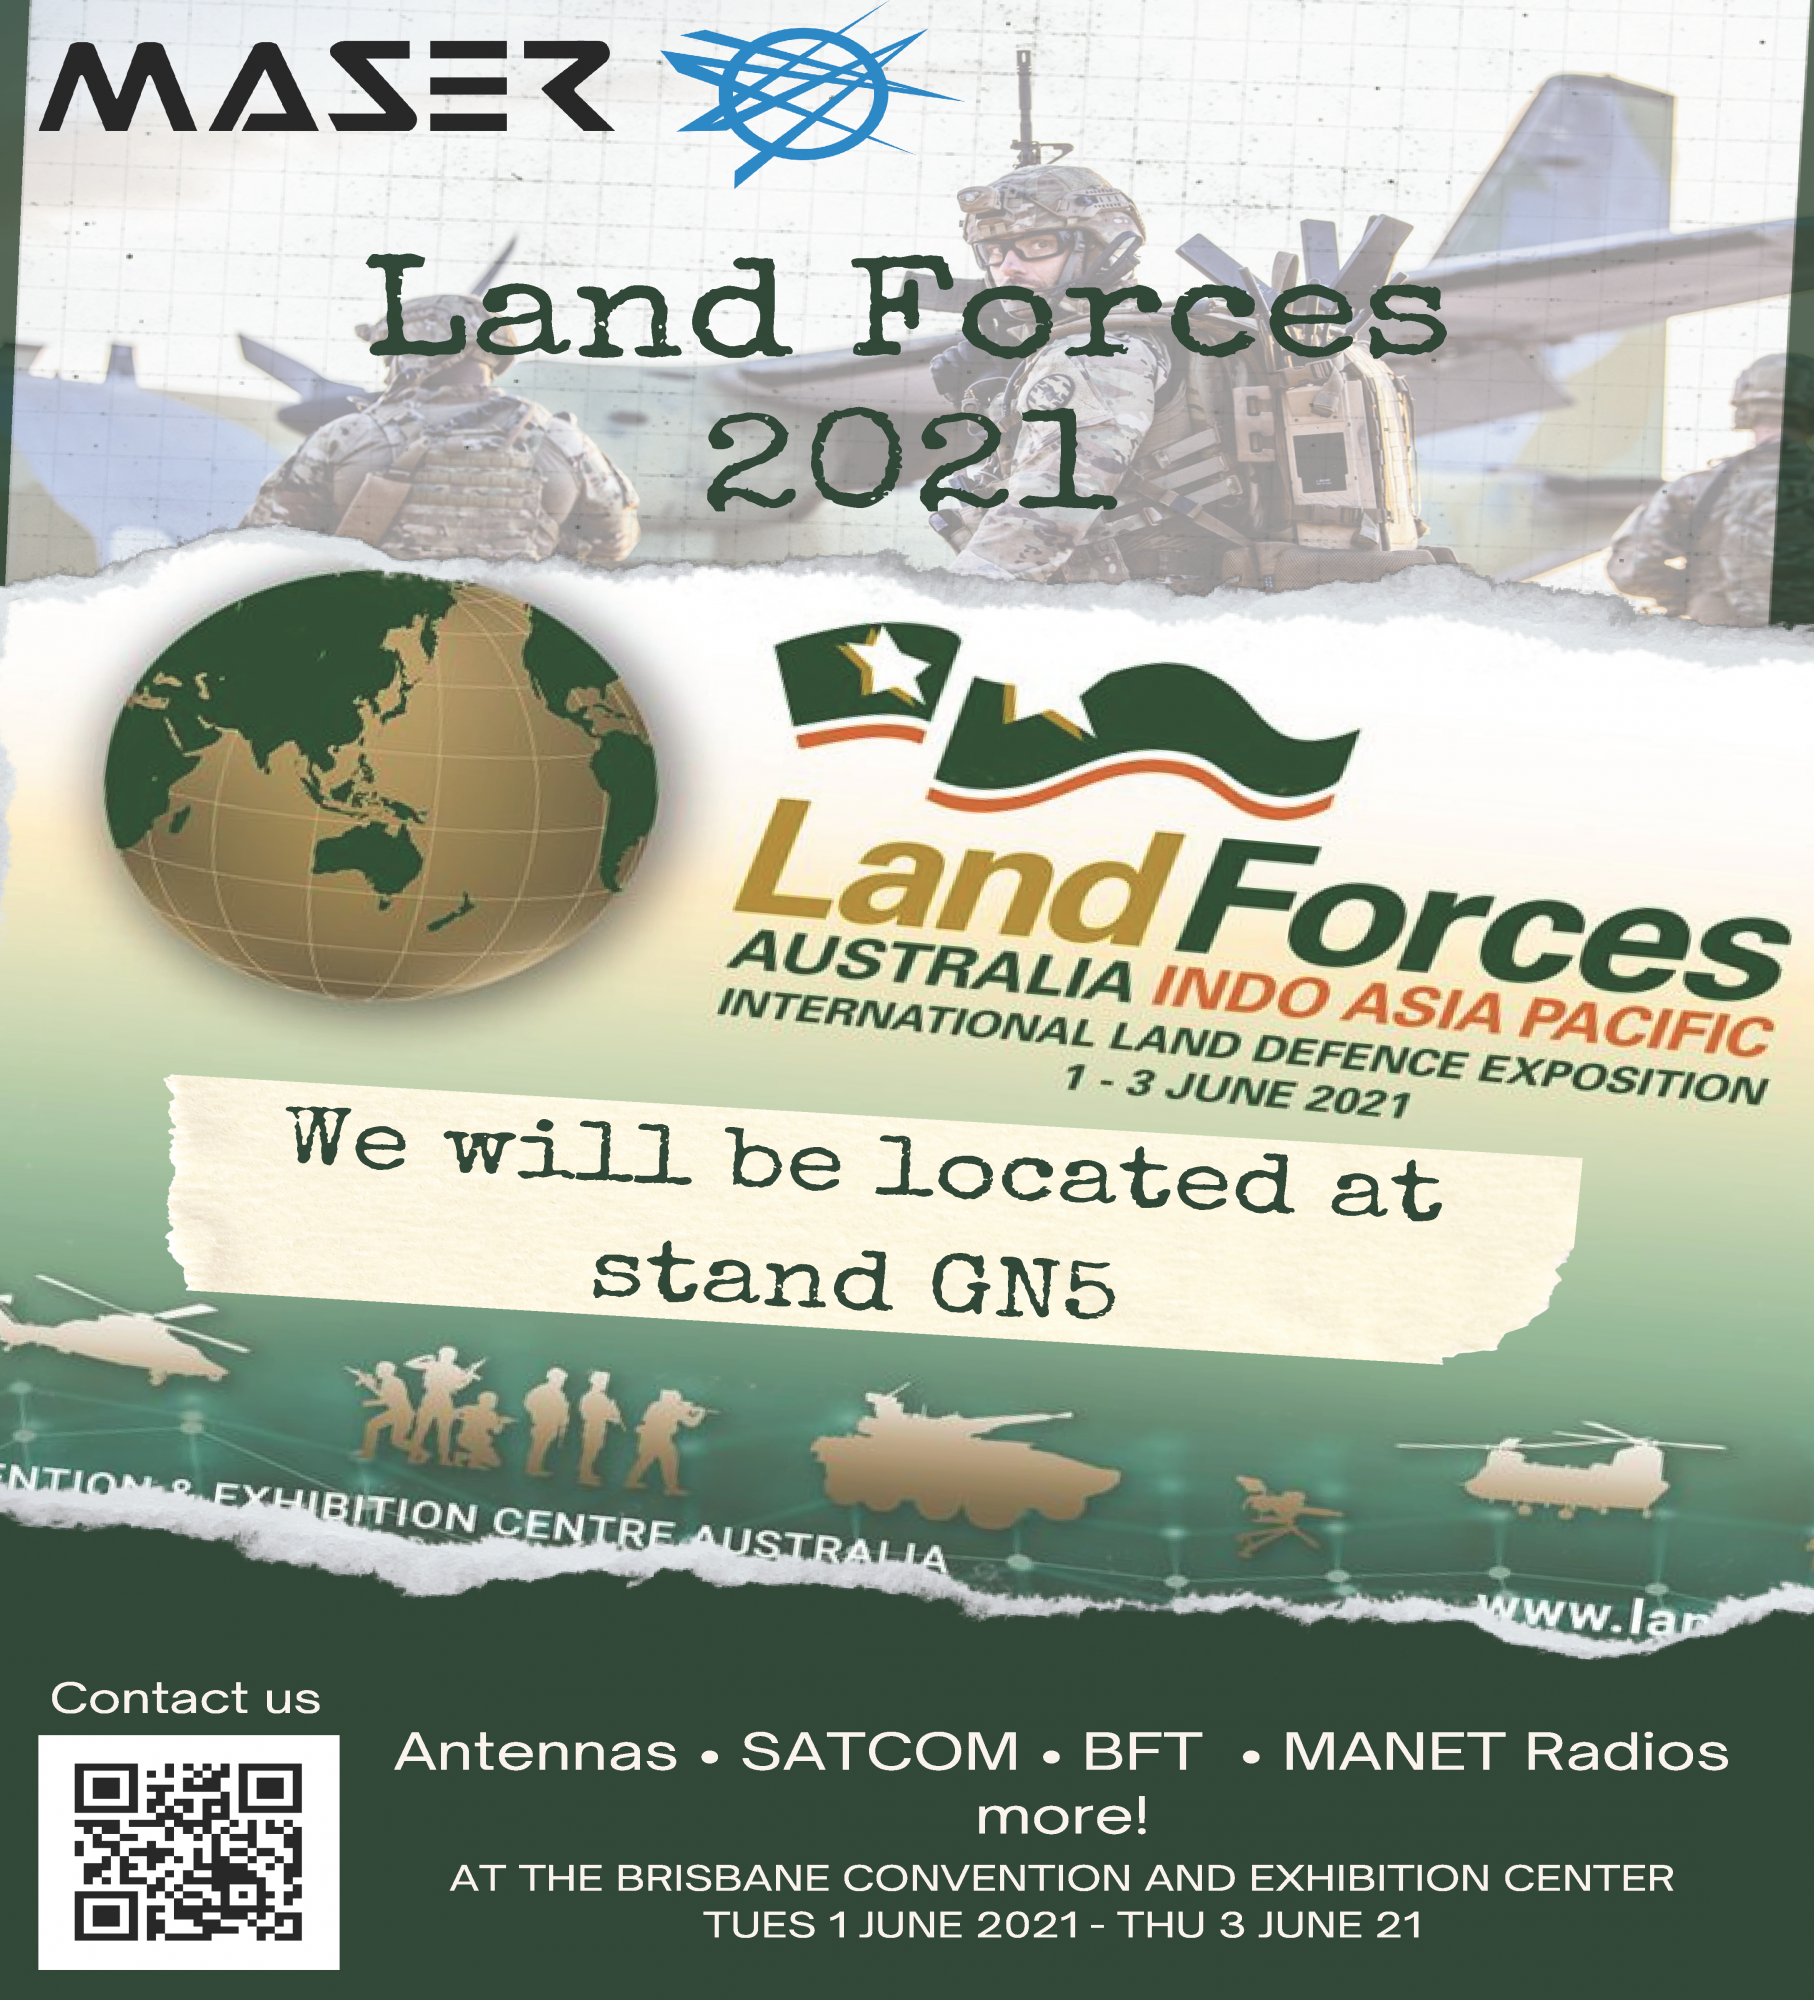 Maser Defence at Landforces 2021